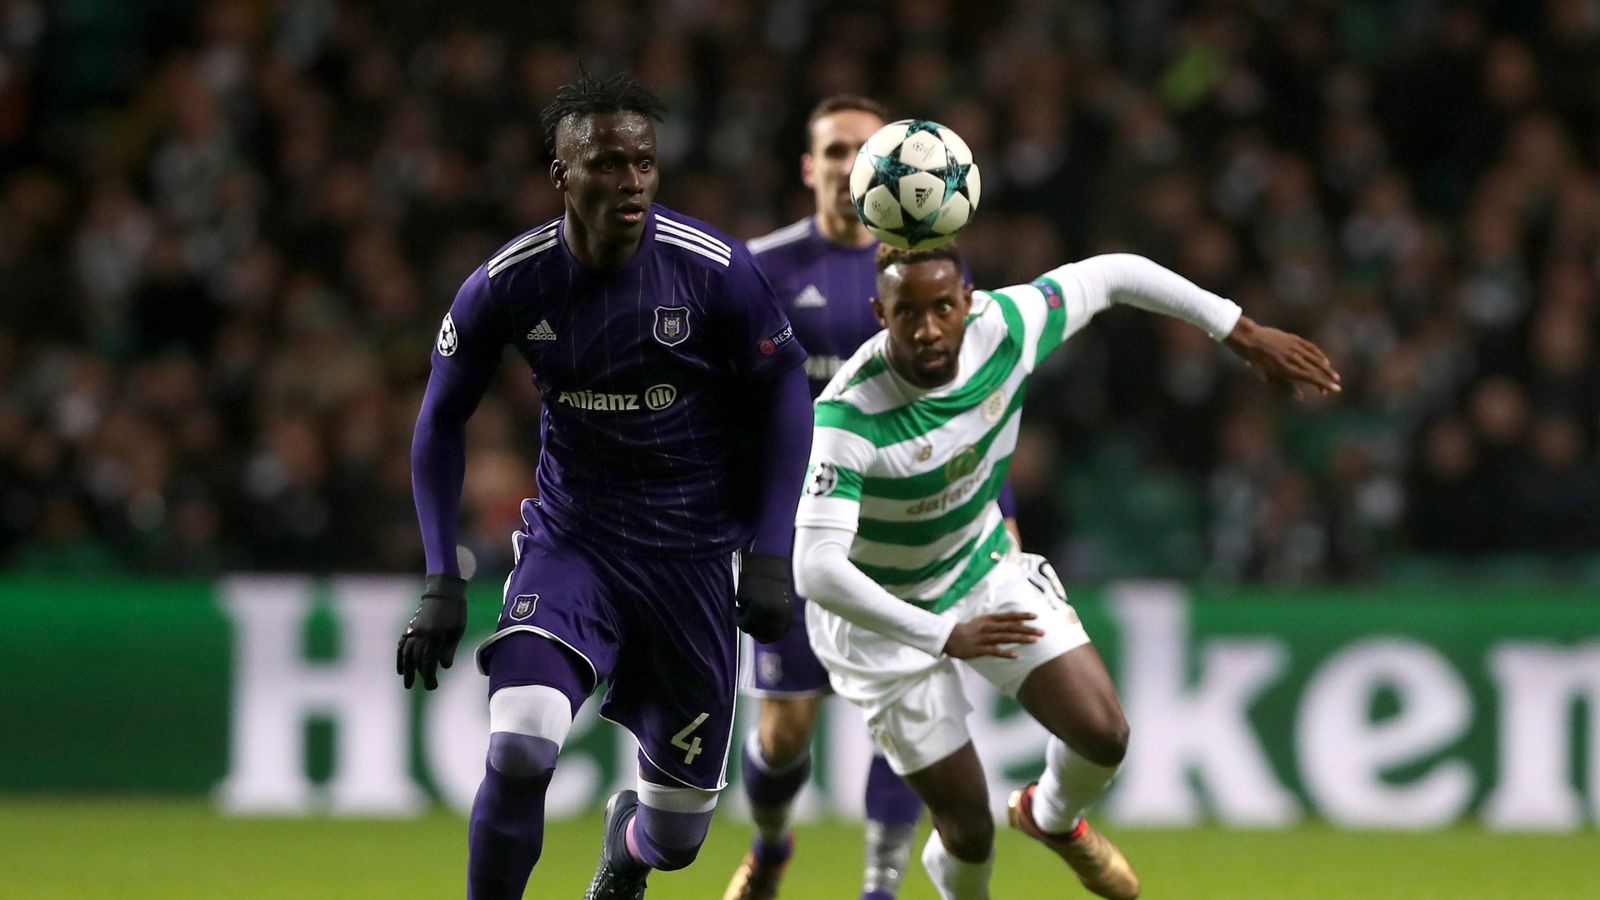 Celtic 0 - 1 Anderlecht - Match Report & Highlights1600 x 900